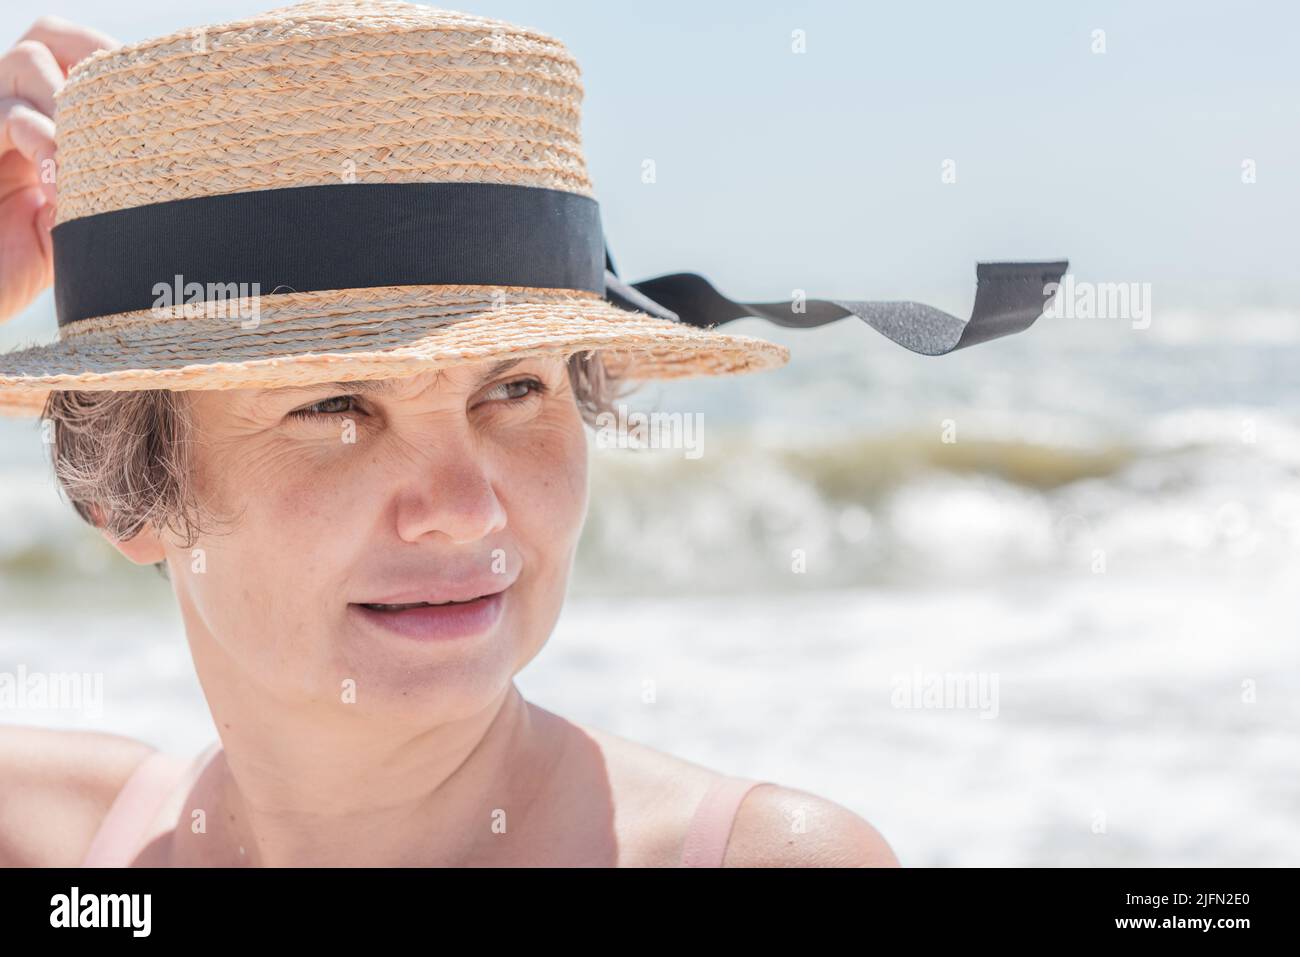 Leicht lächelnde grauhaarige Frau, die den Seefahrer vom Meereswind hält, das schwarze Band auf ihrem Hut vor dem verschwommenen Hintergrund des Meeres mit großen Wellen flattert. Stockfoto